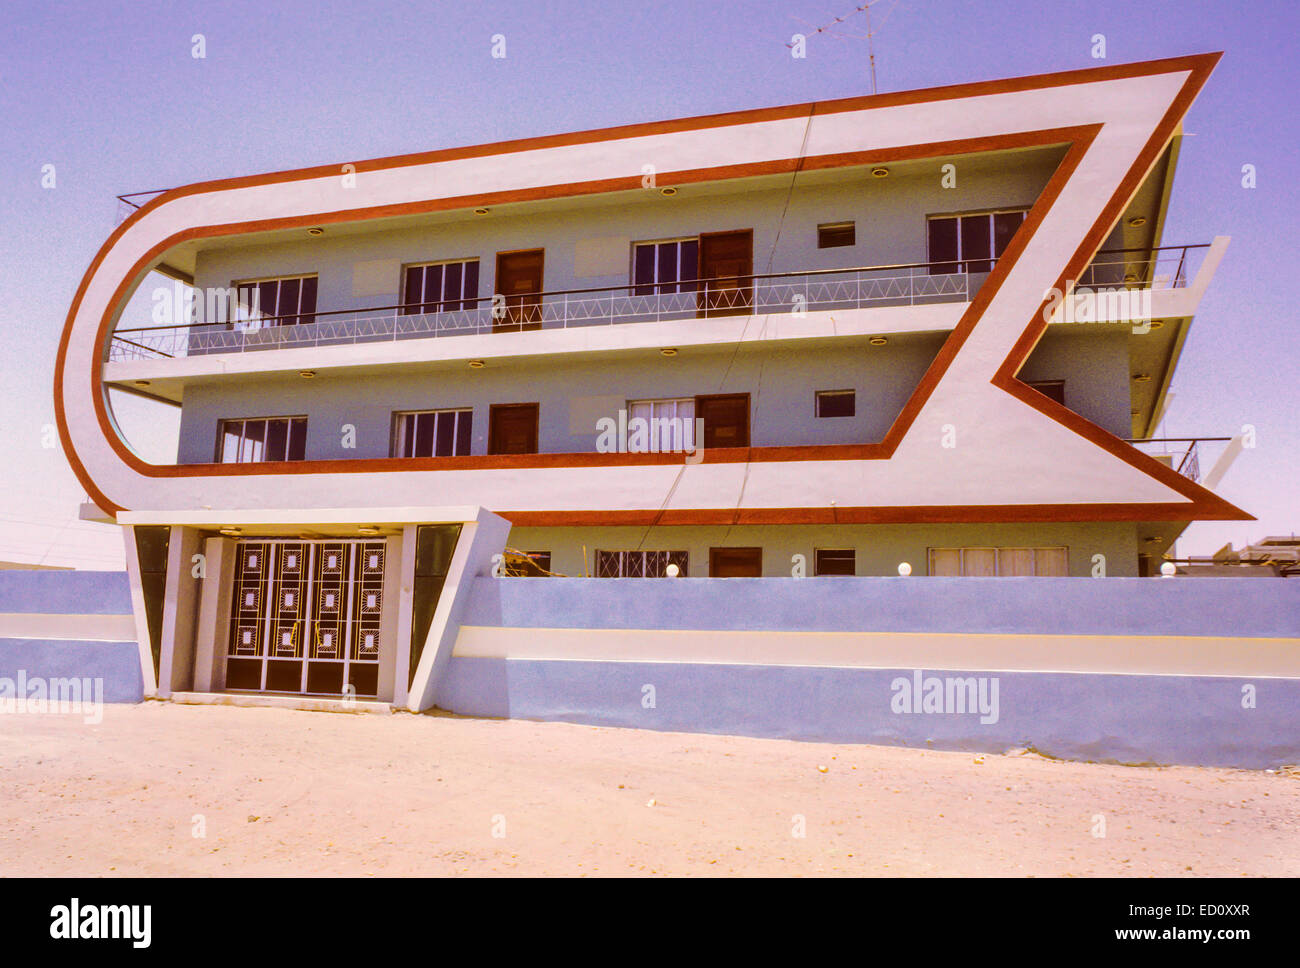 Le Koweït, Kuwait, août 1968. Maison privée ; l'architecture moderne de la fin des années 1960. Banque D'Images